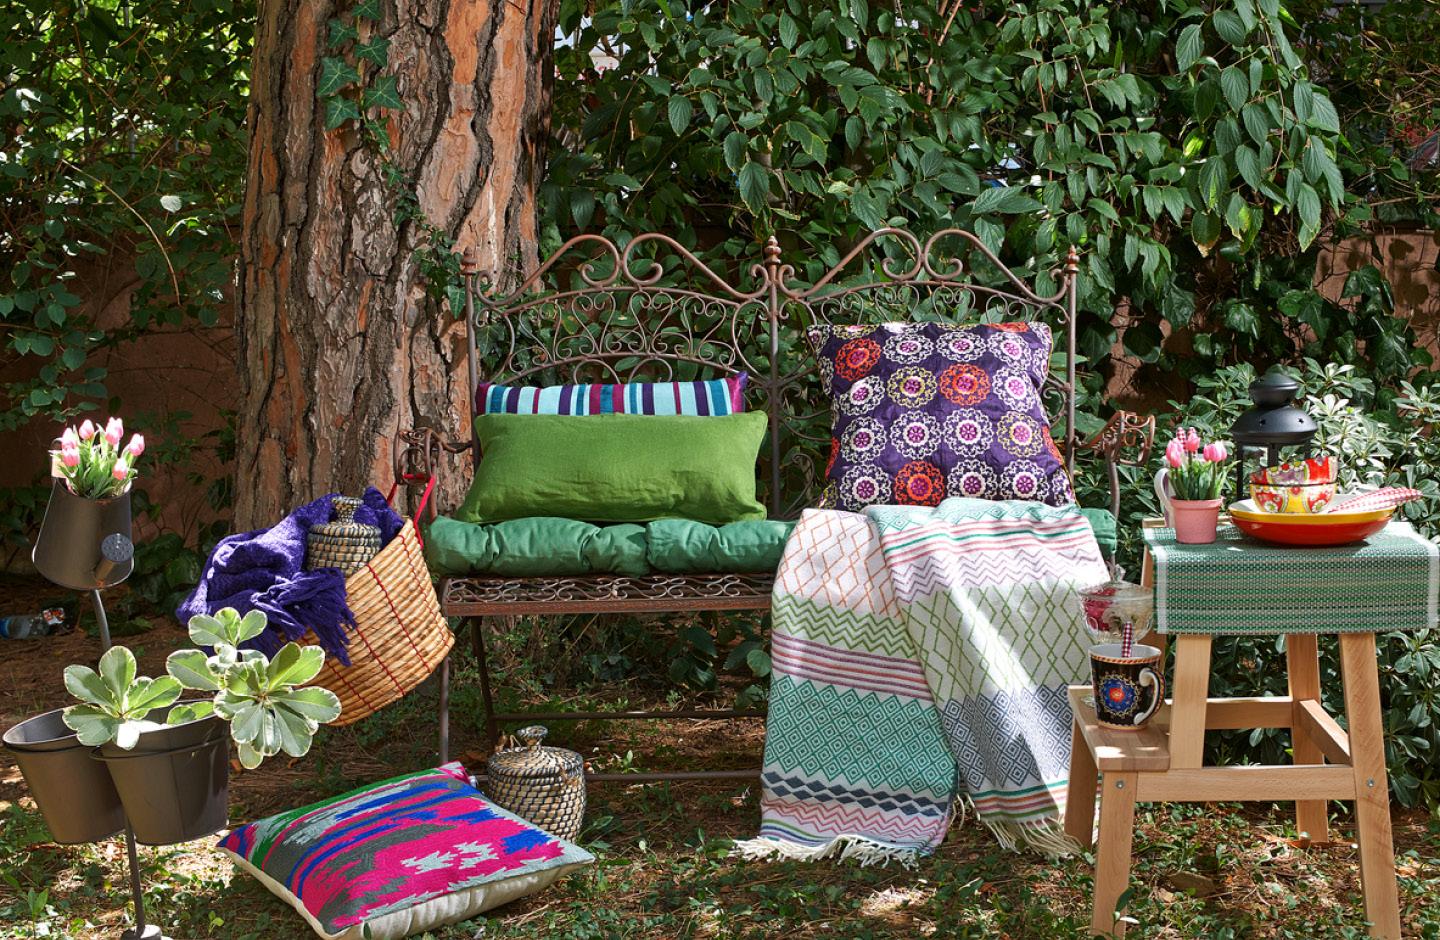 Gartenbank mit bunten Kissen und Decken.